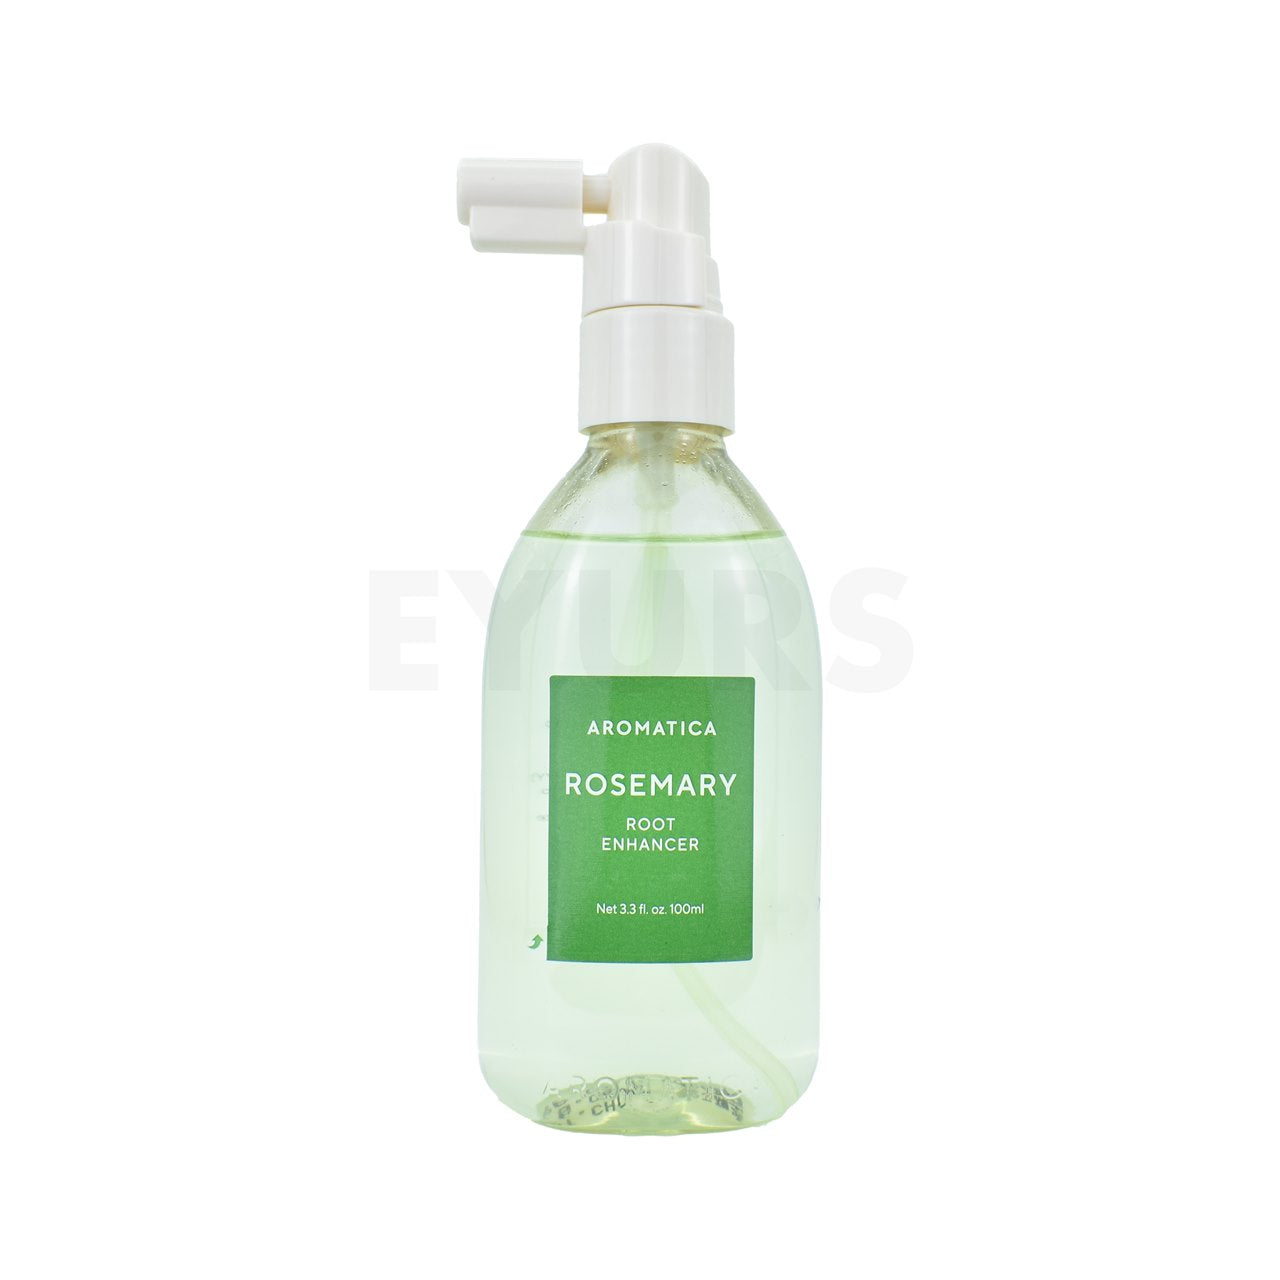 Korean best hair treatment aromatica rosemary root enhancer 100ml